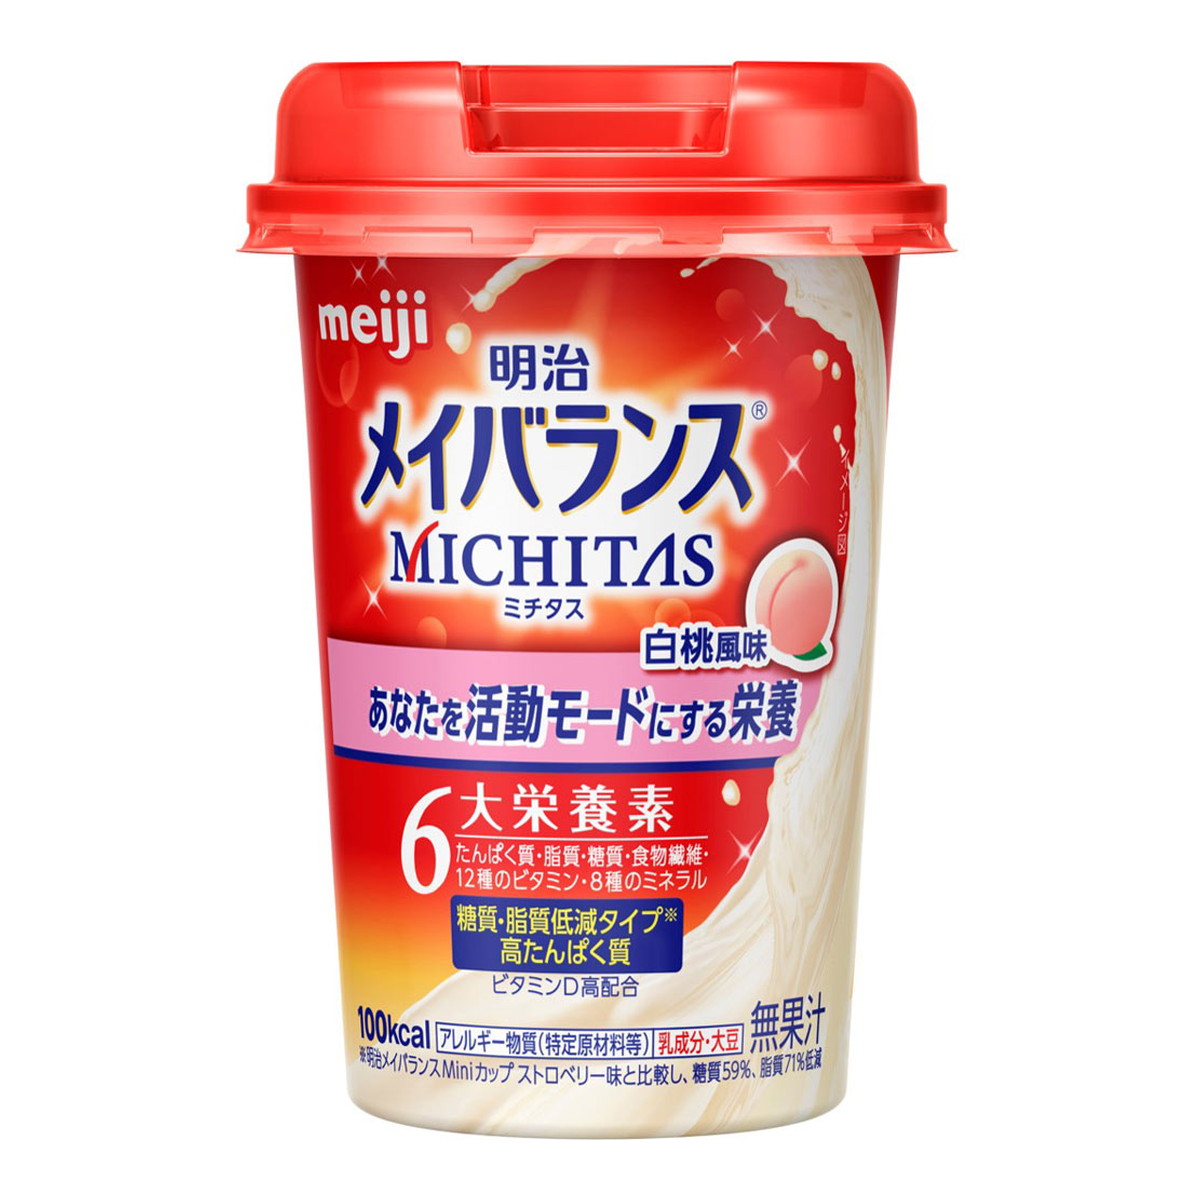 明治 明治 メイバランス MICHITAS カップ 白桃風味 125ml×3本 介護食の商品画像